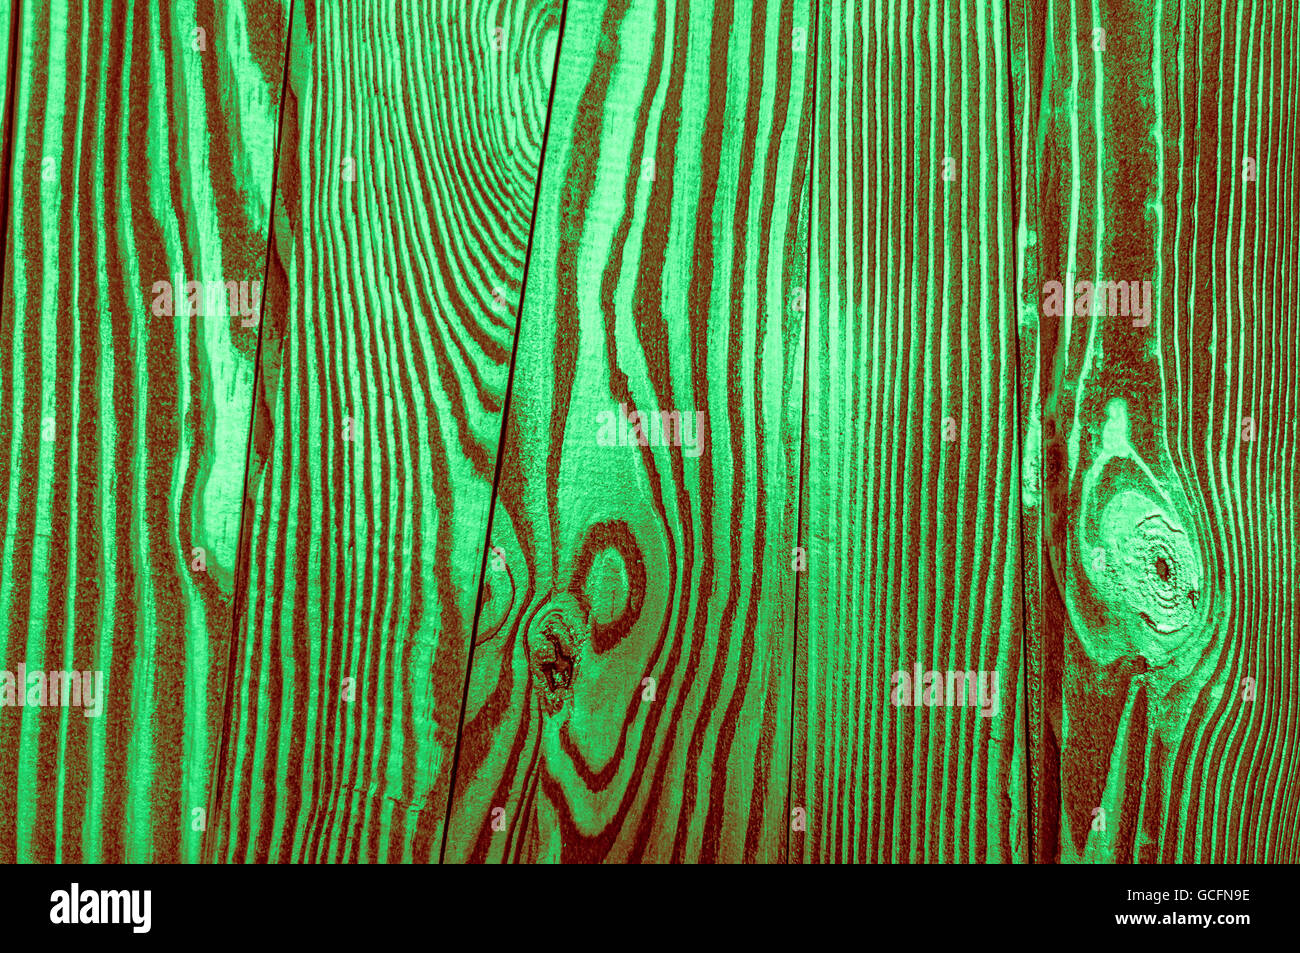 Perfetta luce verde scuro rossiccio irregolari di colore verdastro vecchio e ruvido legname close-up sfondo texture Foto Stock